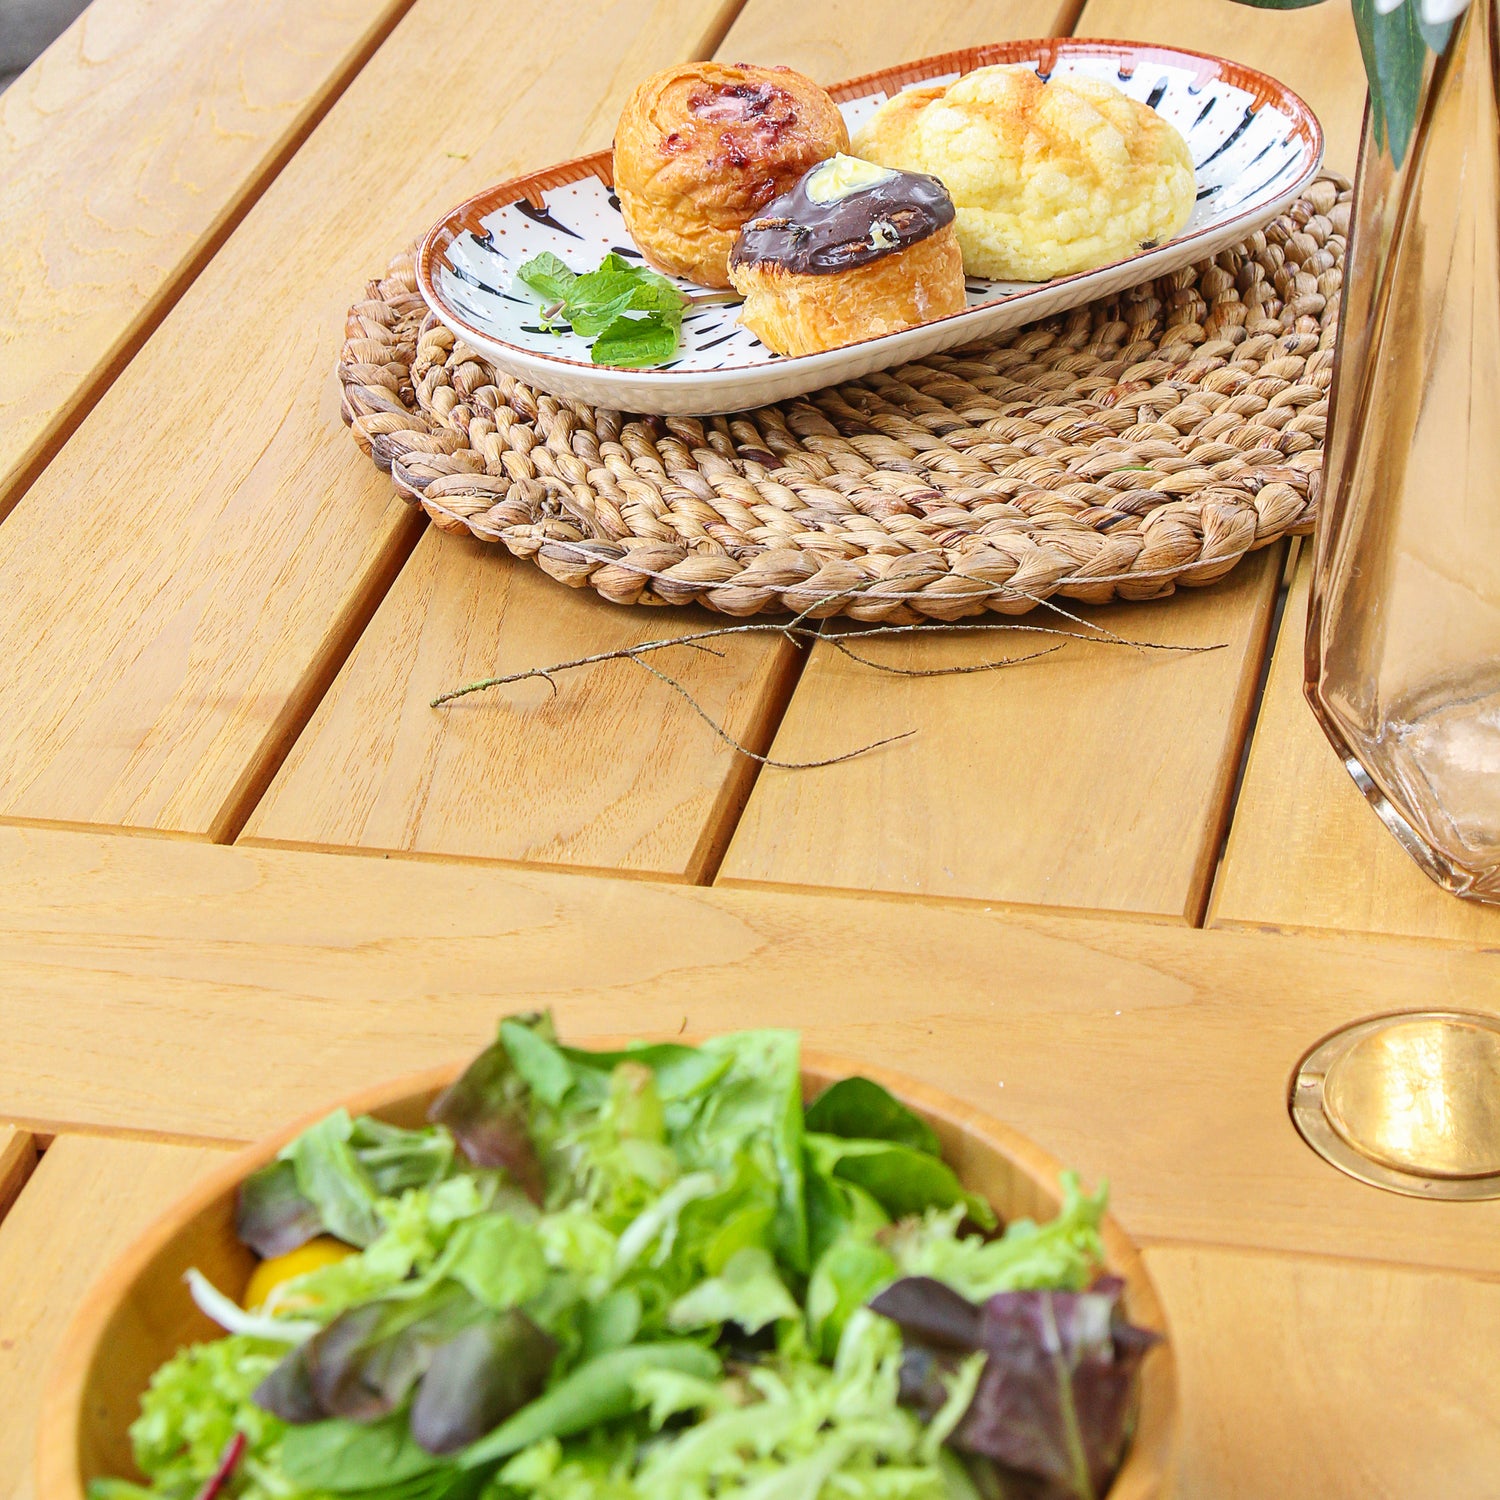 Nassau Teak Wood 7 Piece Outdoor Dining Set with Tan Polyrope